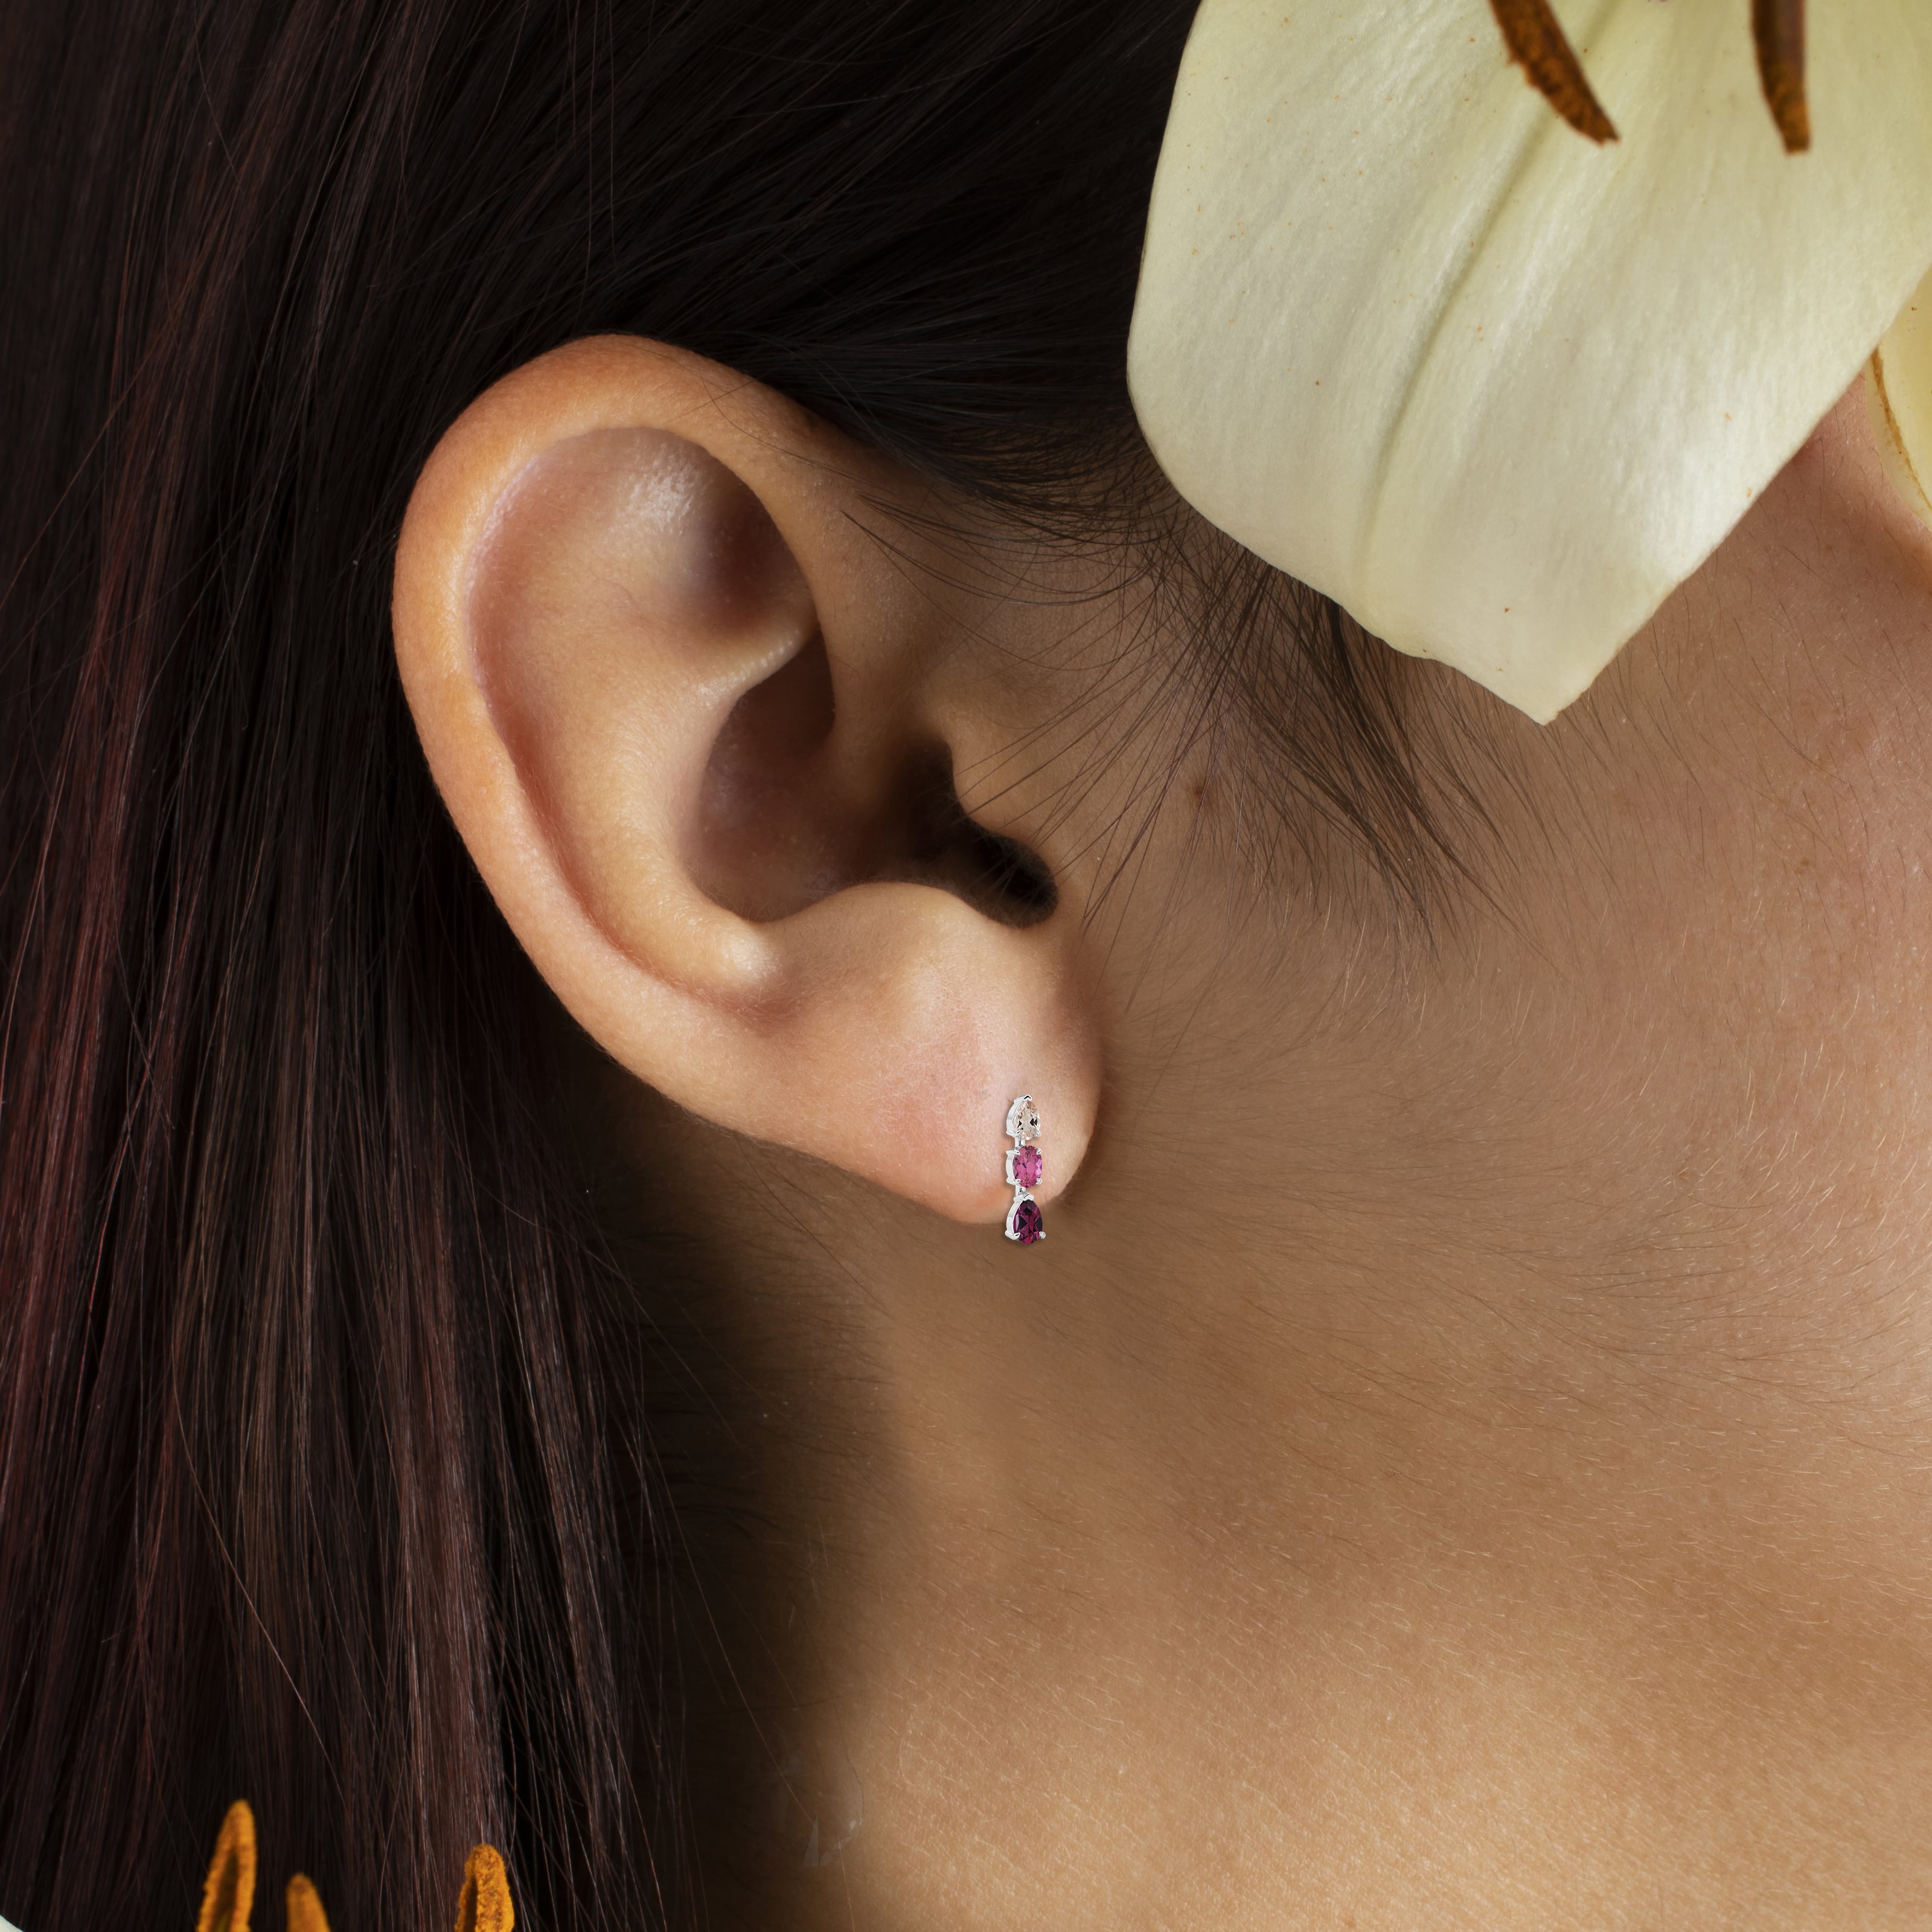 gemstone dangling earrings on model ear